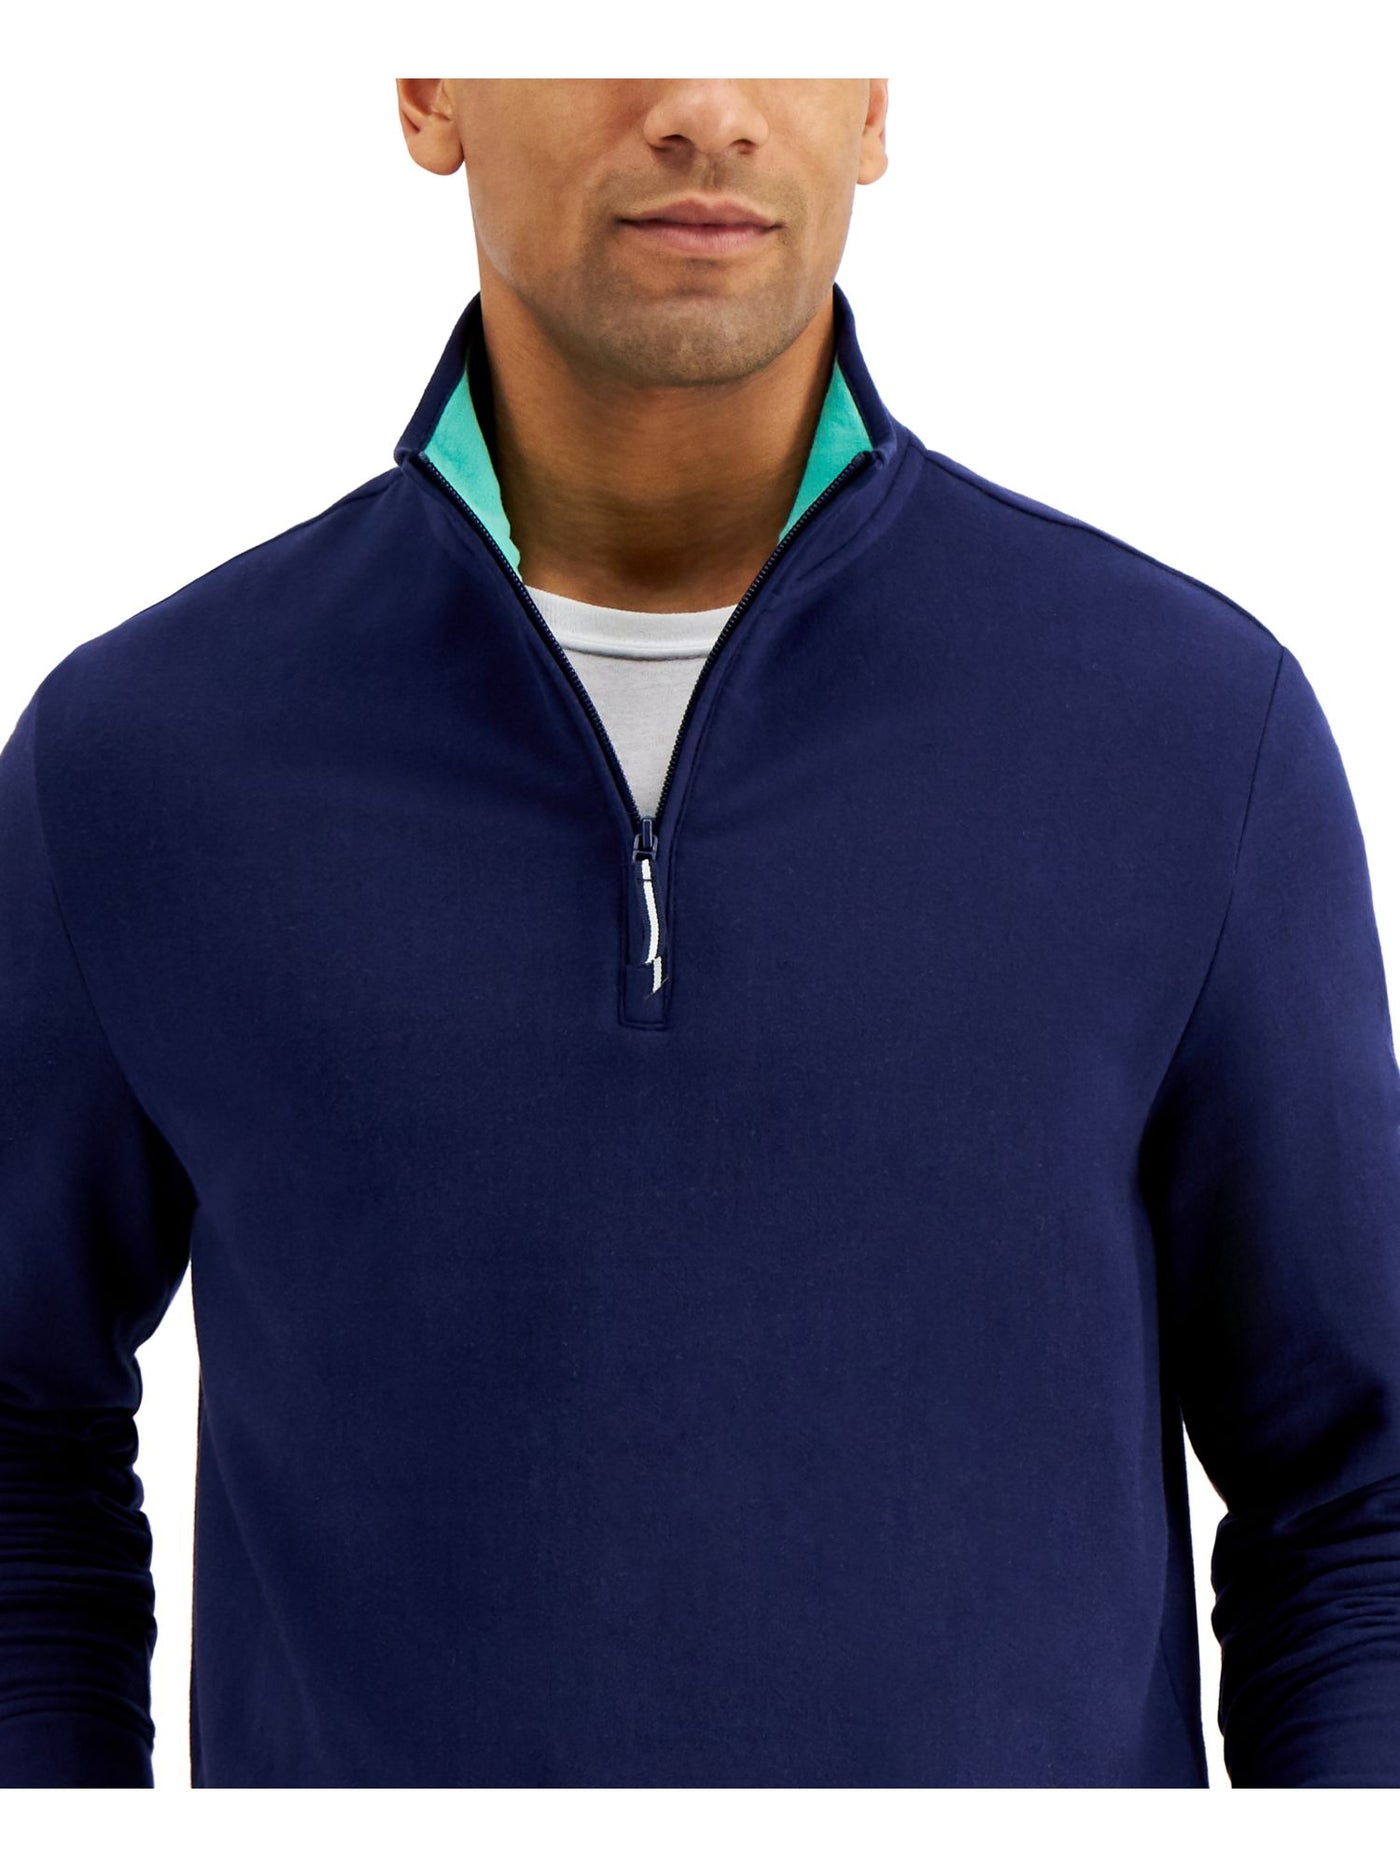 CLUBROOM Mens Navy Turtle Neck Classic Fit Quarter-Zip Fleece Pullover Sweater S